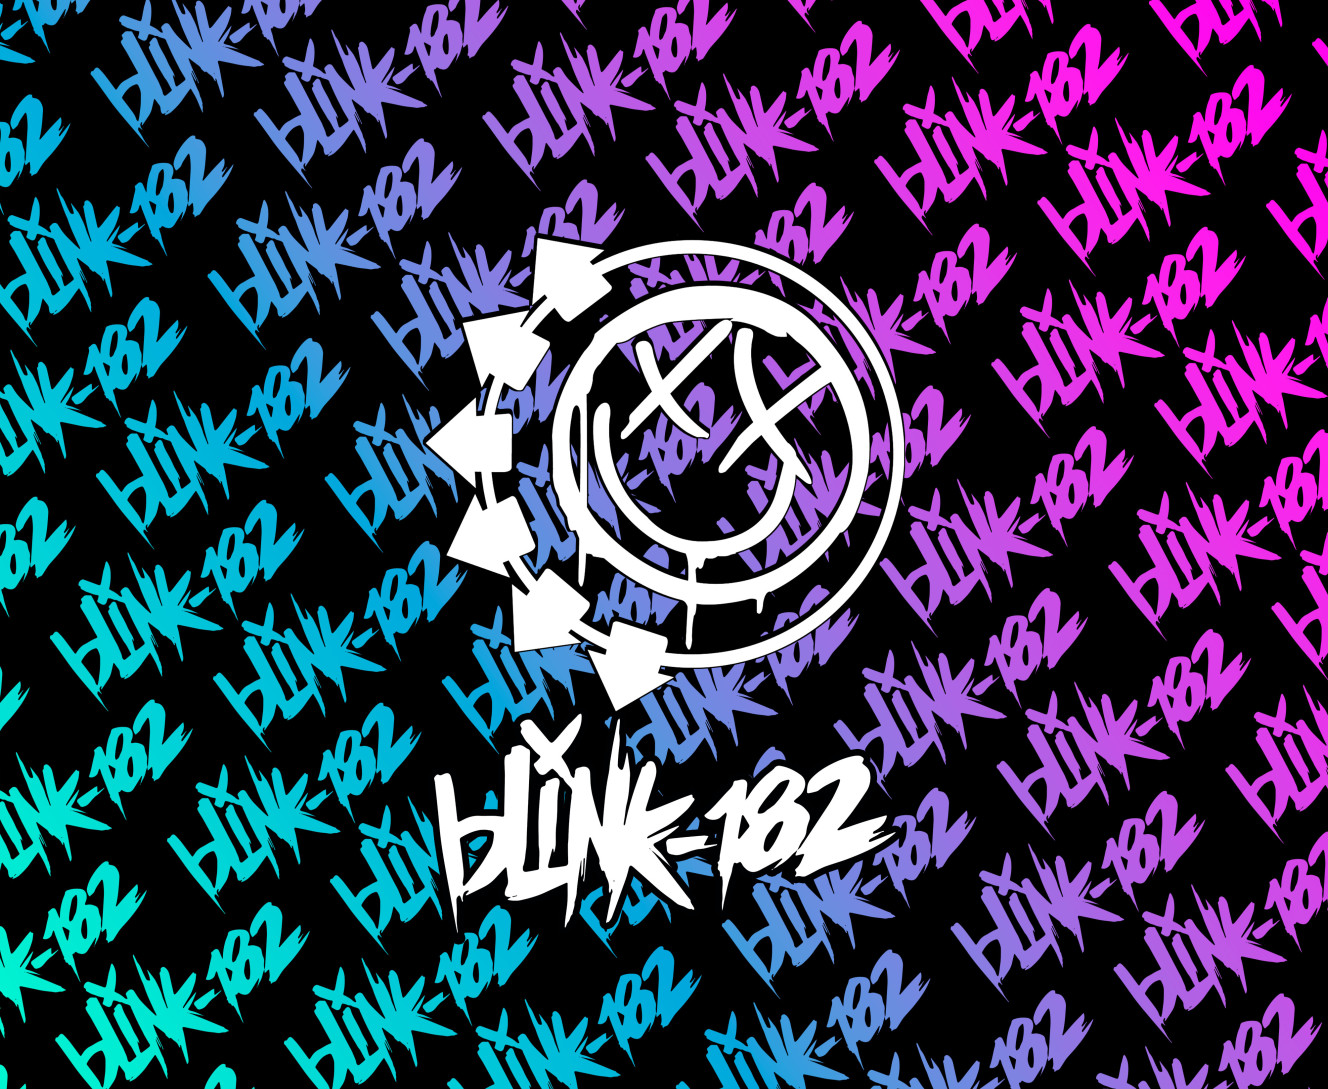 Blink-182 [12]